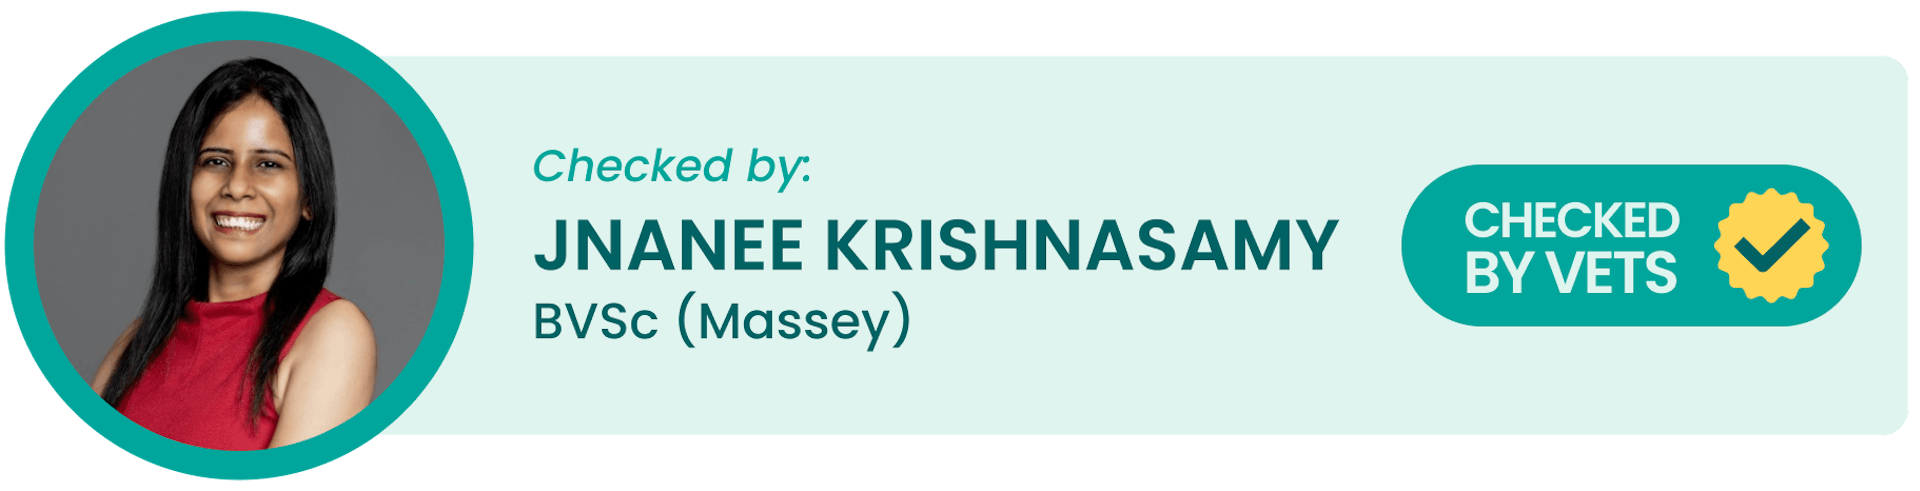 Checked by: Jnanee Krishnasamy, BVSc (Massey)